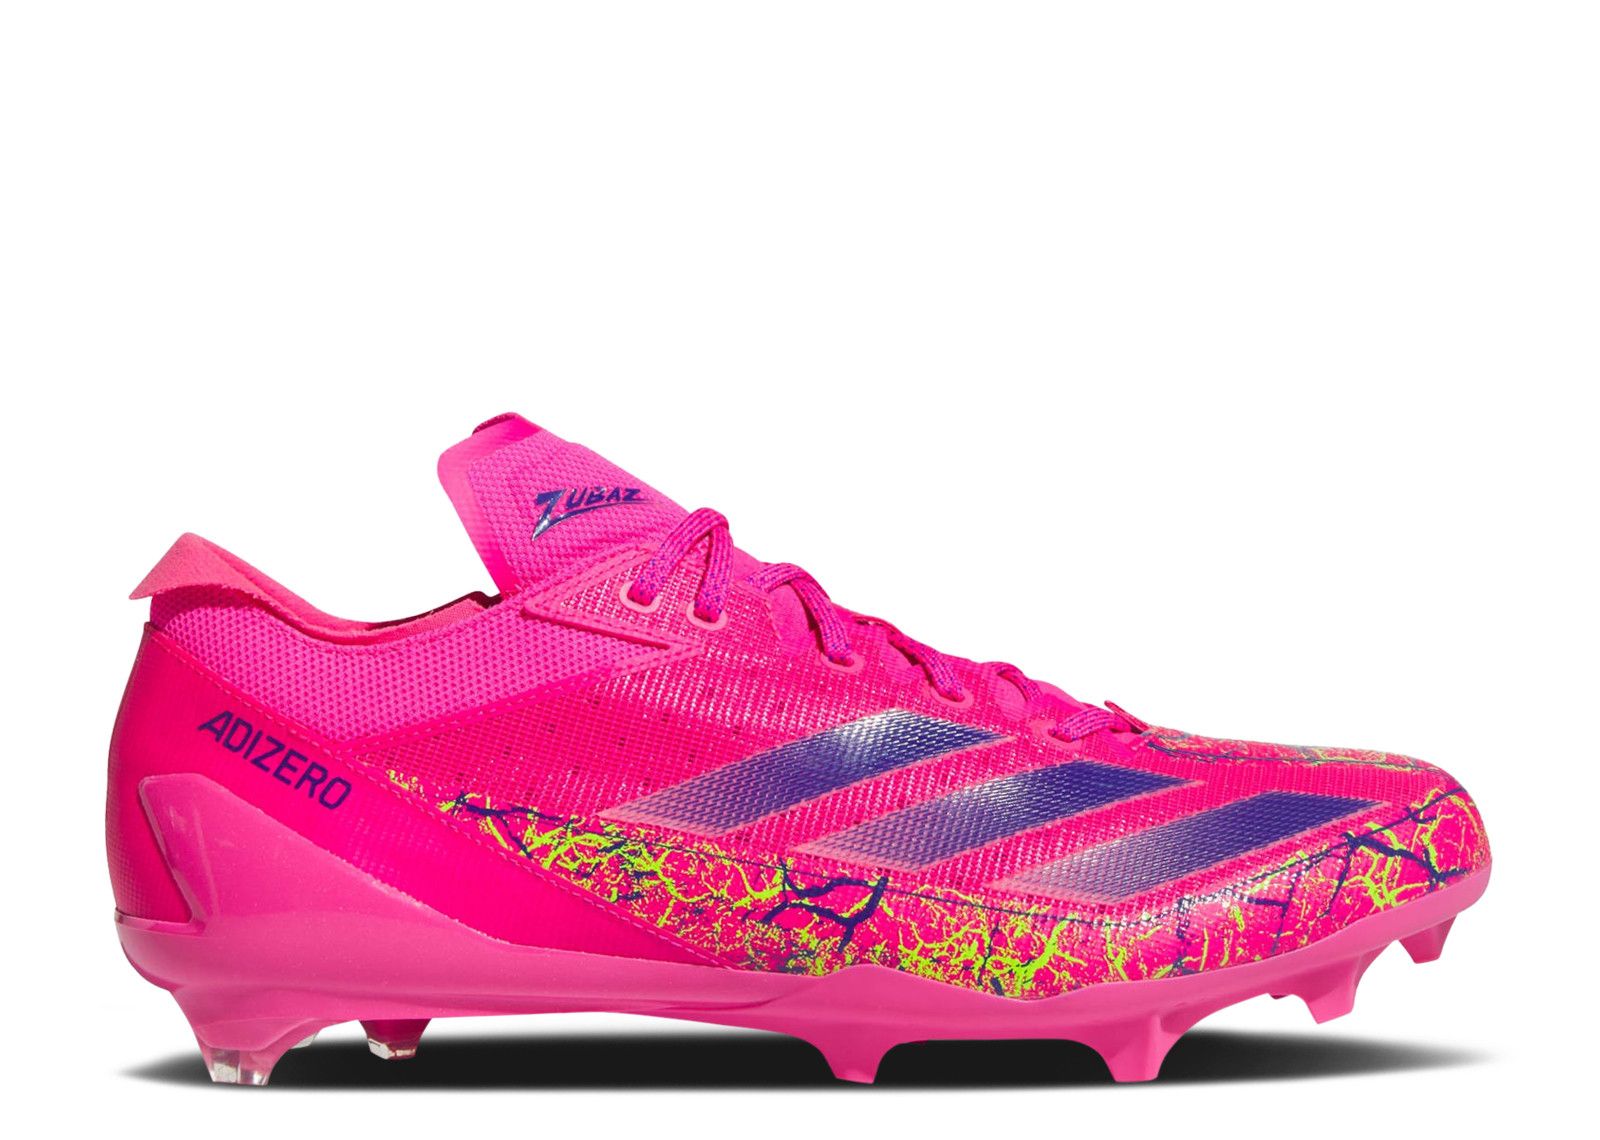 Zubaz X Adizero Electric 'Shock Pink' - Adidas - IF3995 - team 